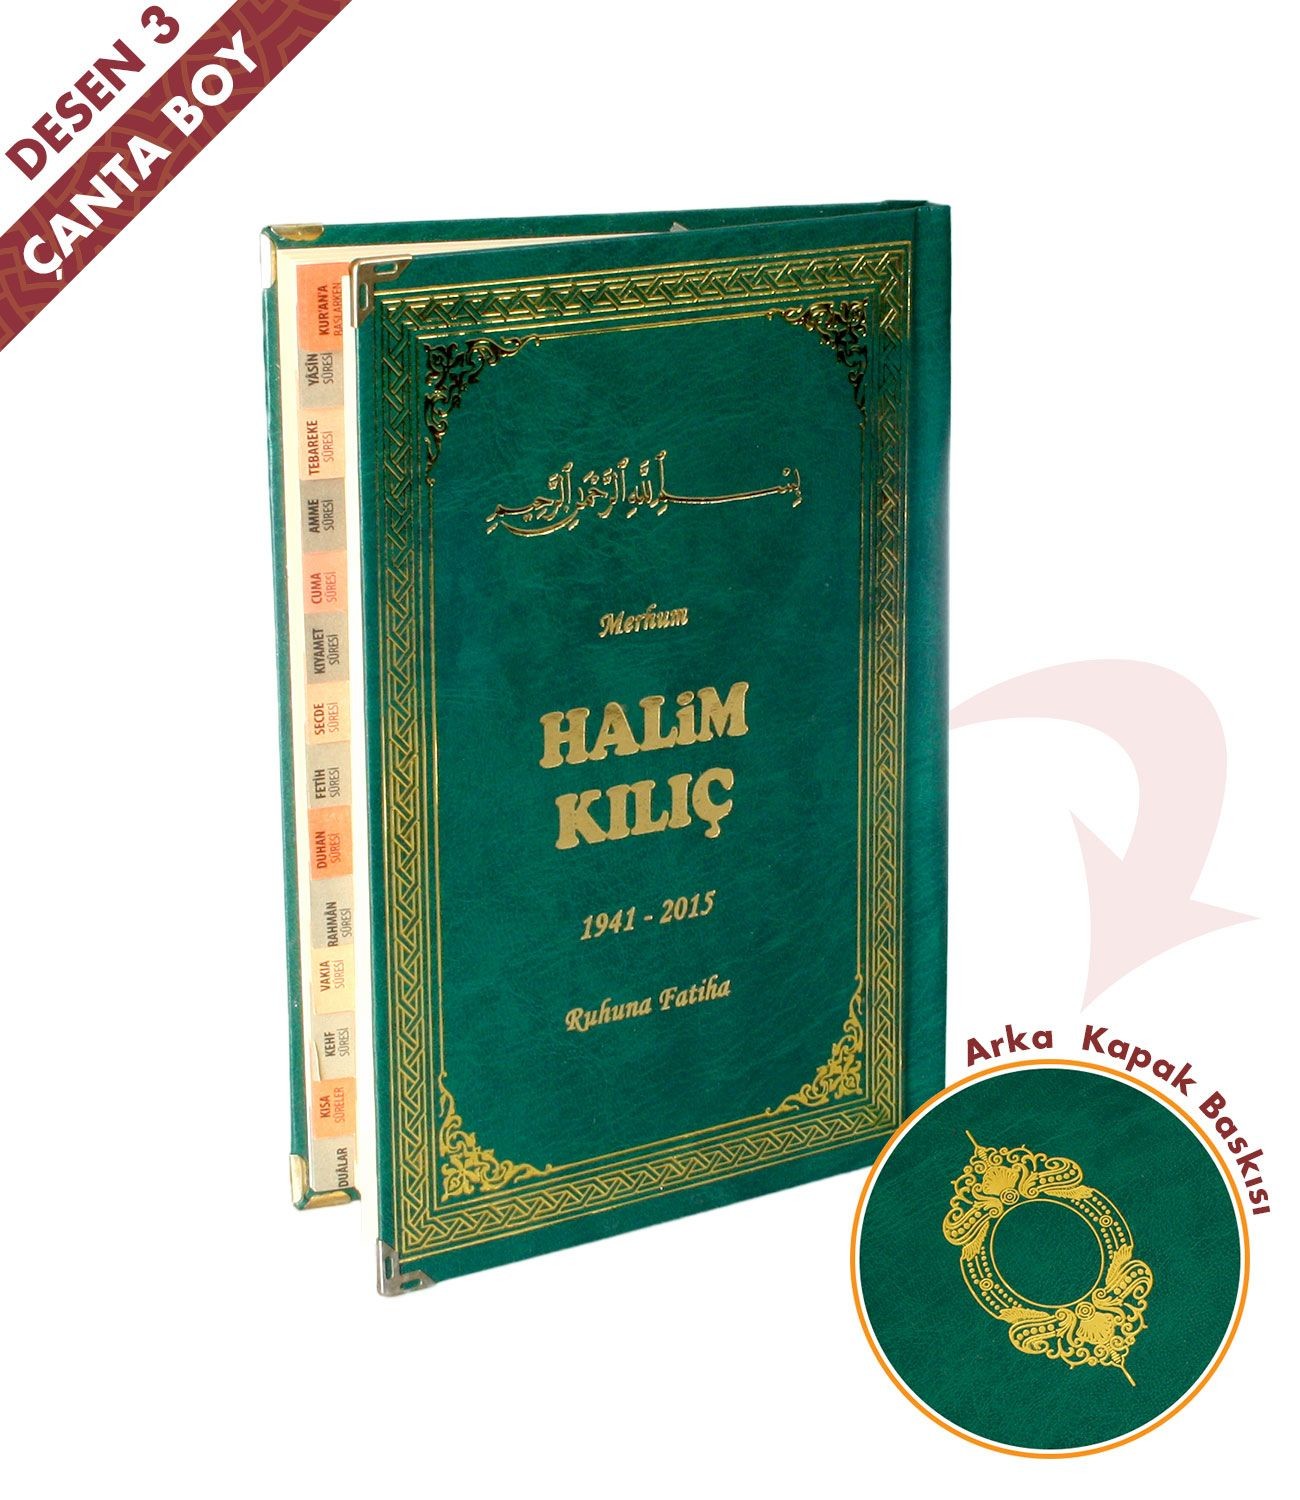  İsim Baskılı   Ciltli Yasin Kitabı   Osmanlı Desen   Yeşil   Çanta Boy